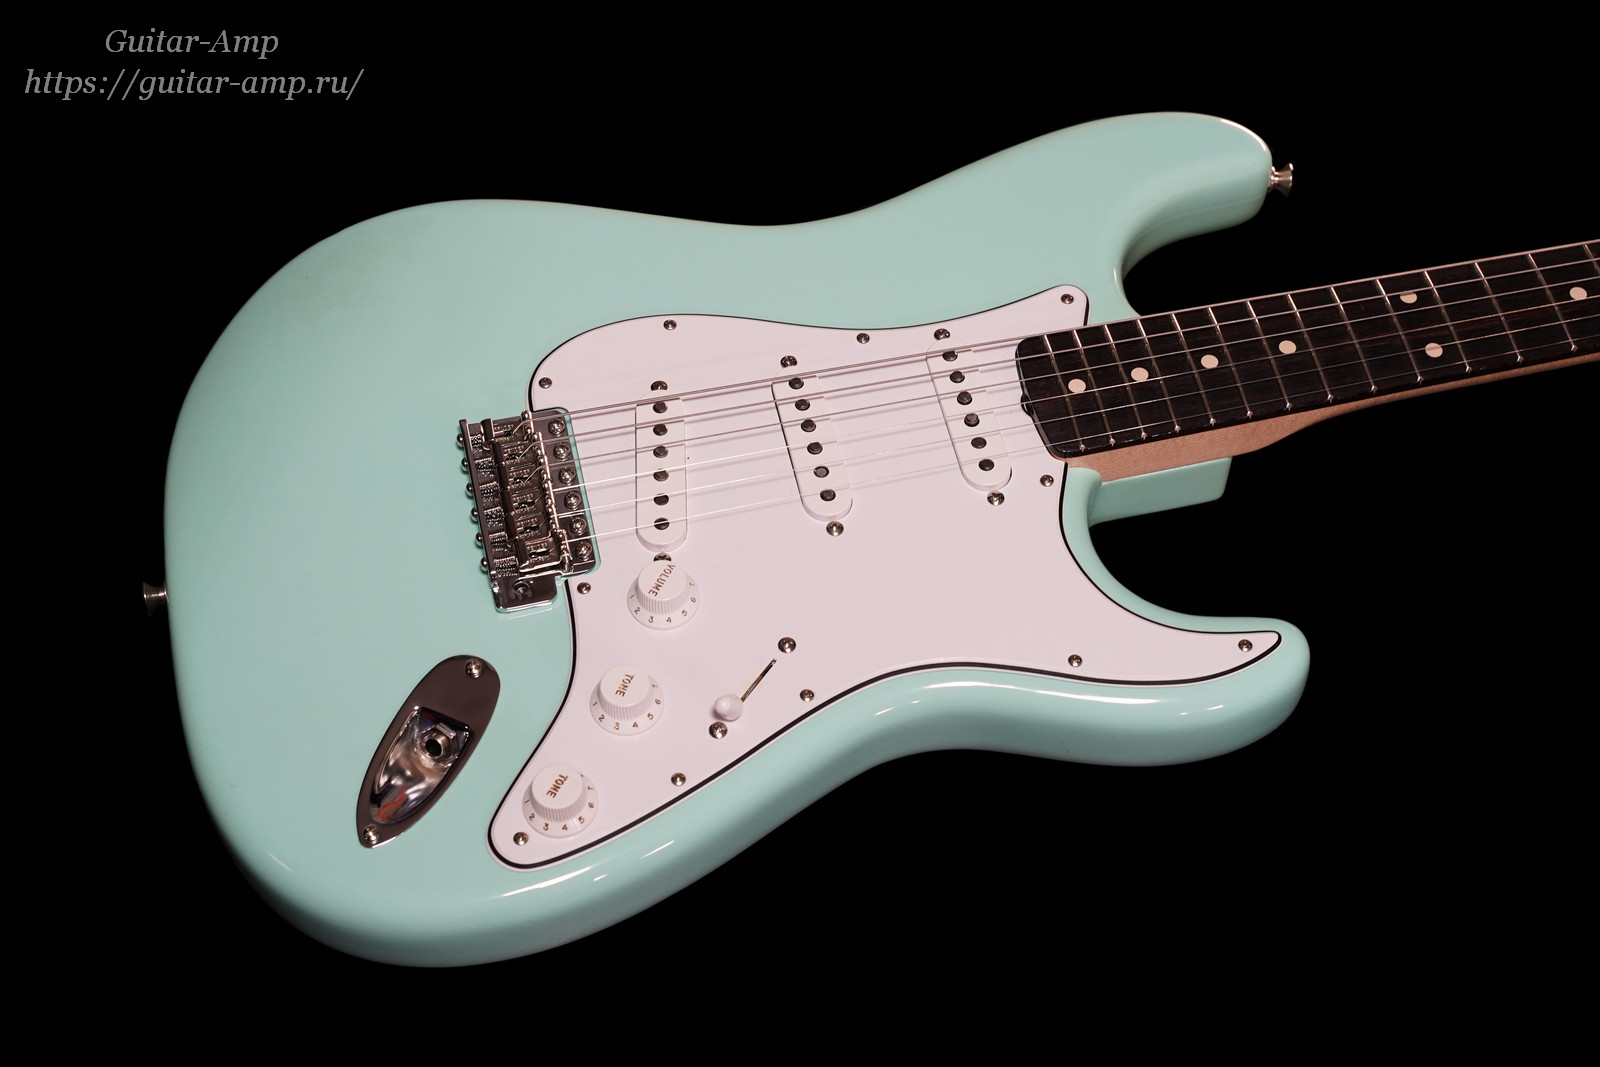 Fender Custom Shop Stratocaster 1960 Reissue Custom Order Fat Neck Surf Green NOS 2020 09_x1600.jpg